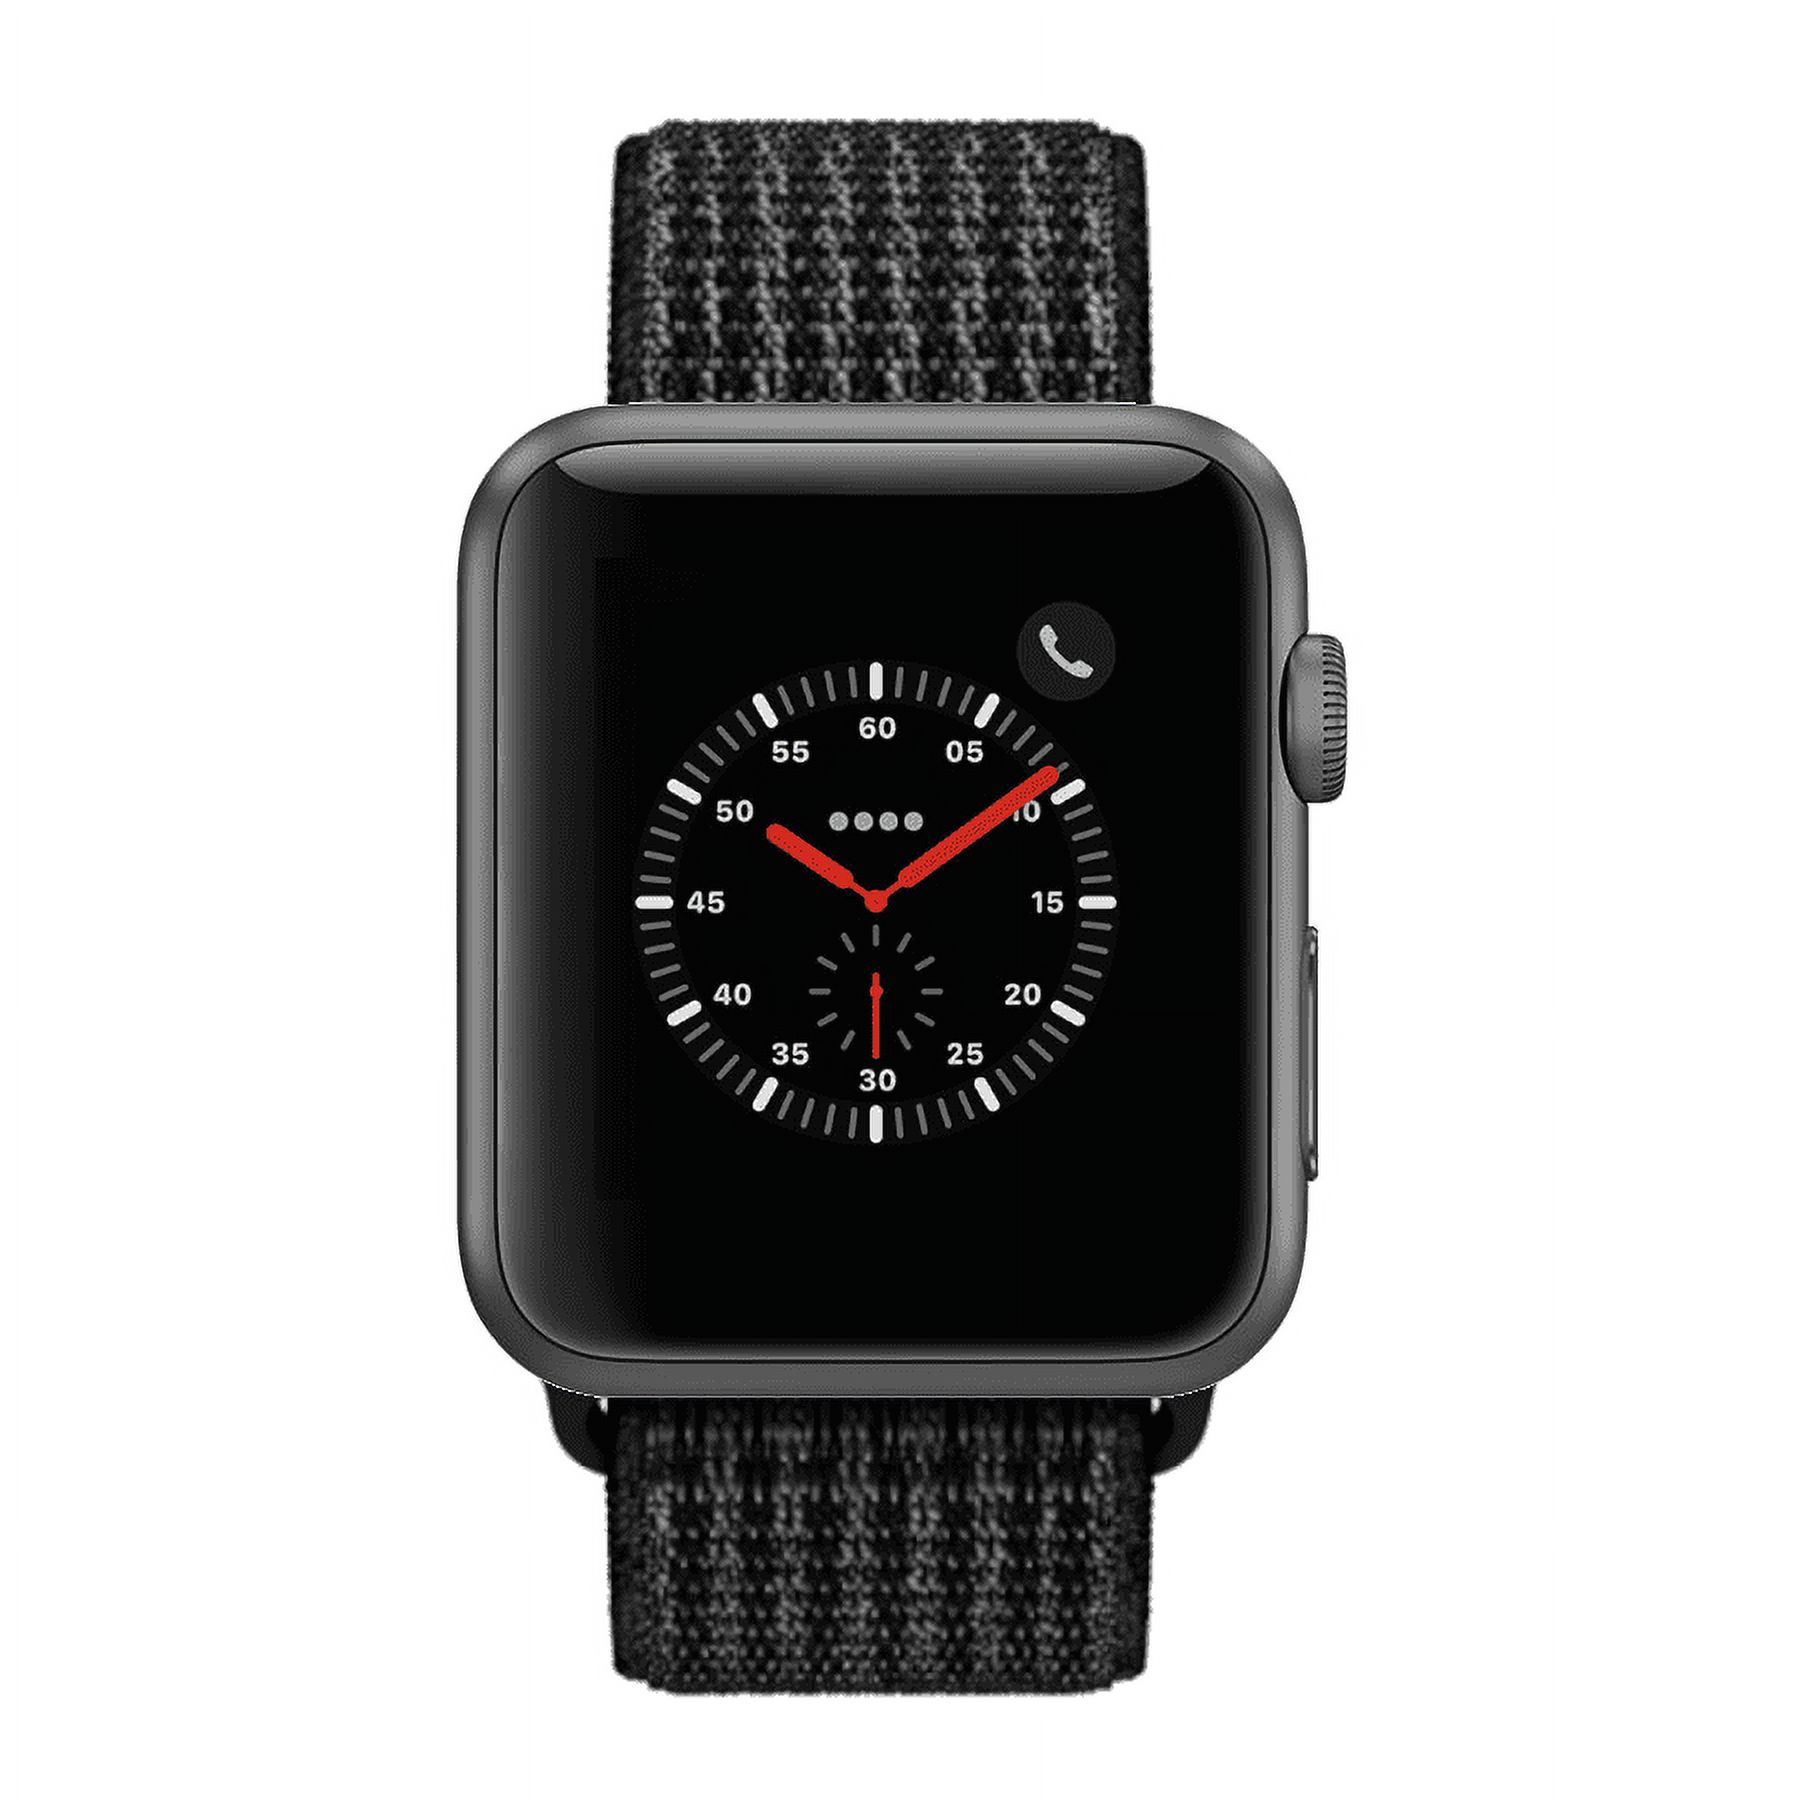 Restored Apple Watch Series 2 - 42mm, WiFi - Space Gray with Black Sport Loop (Refurbished) - image 1 of 1